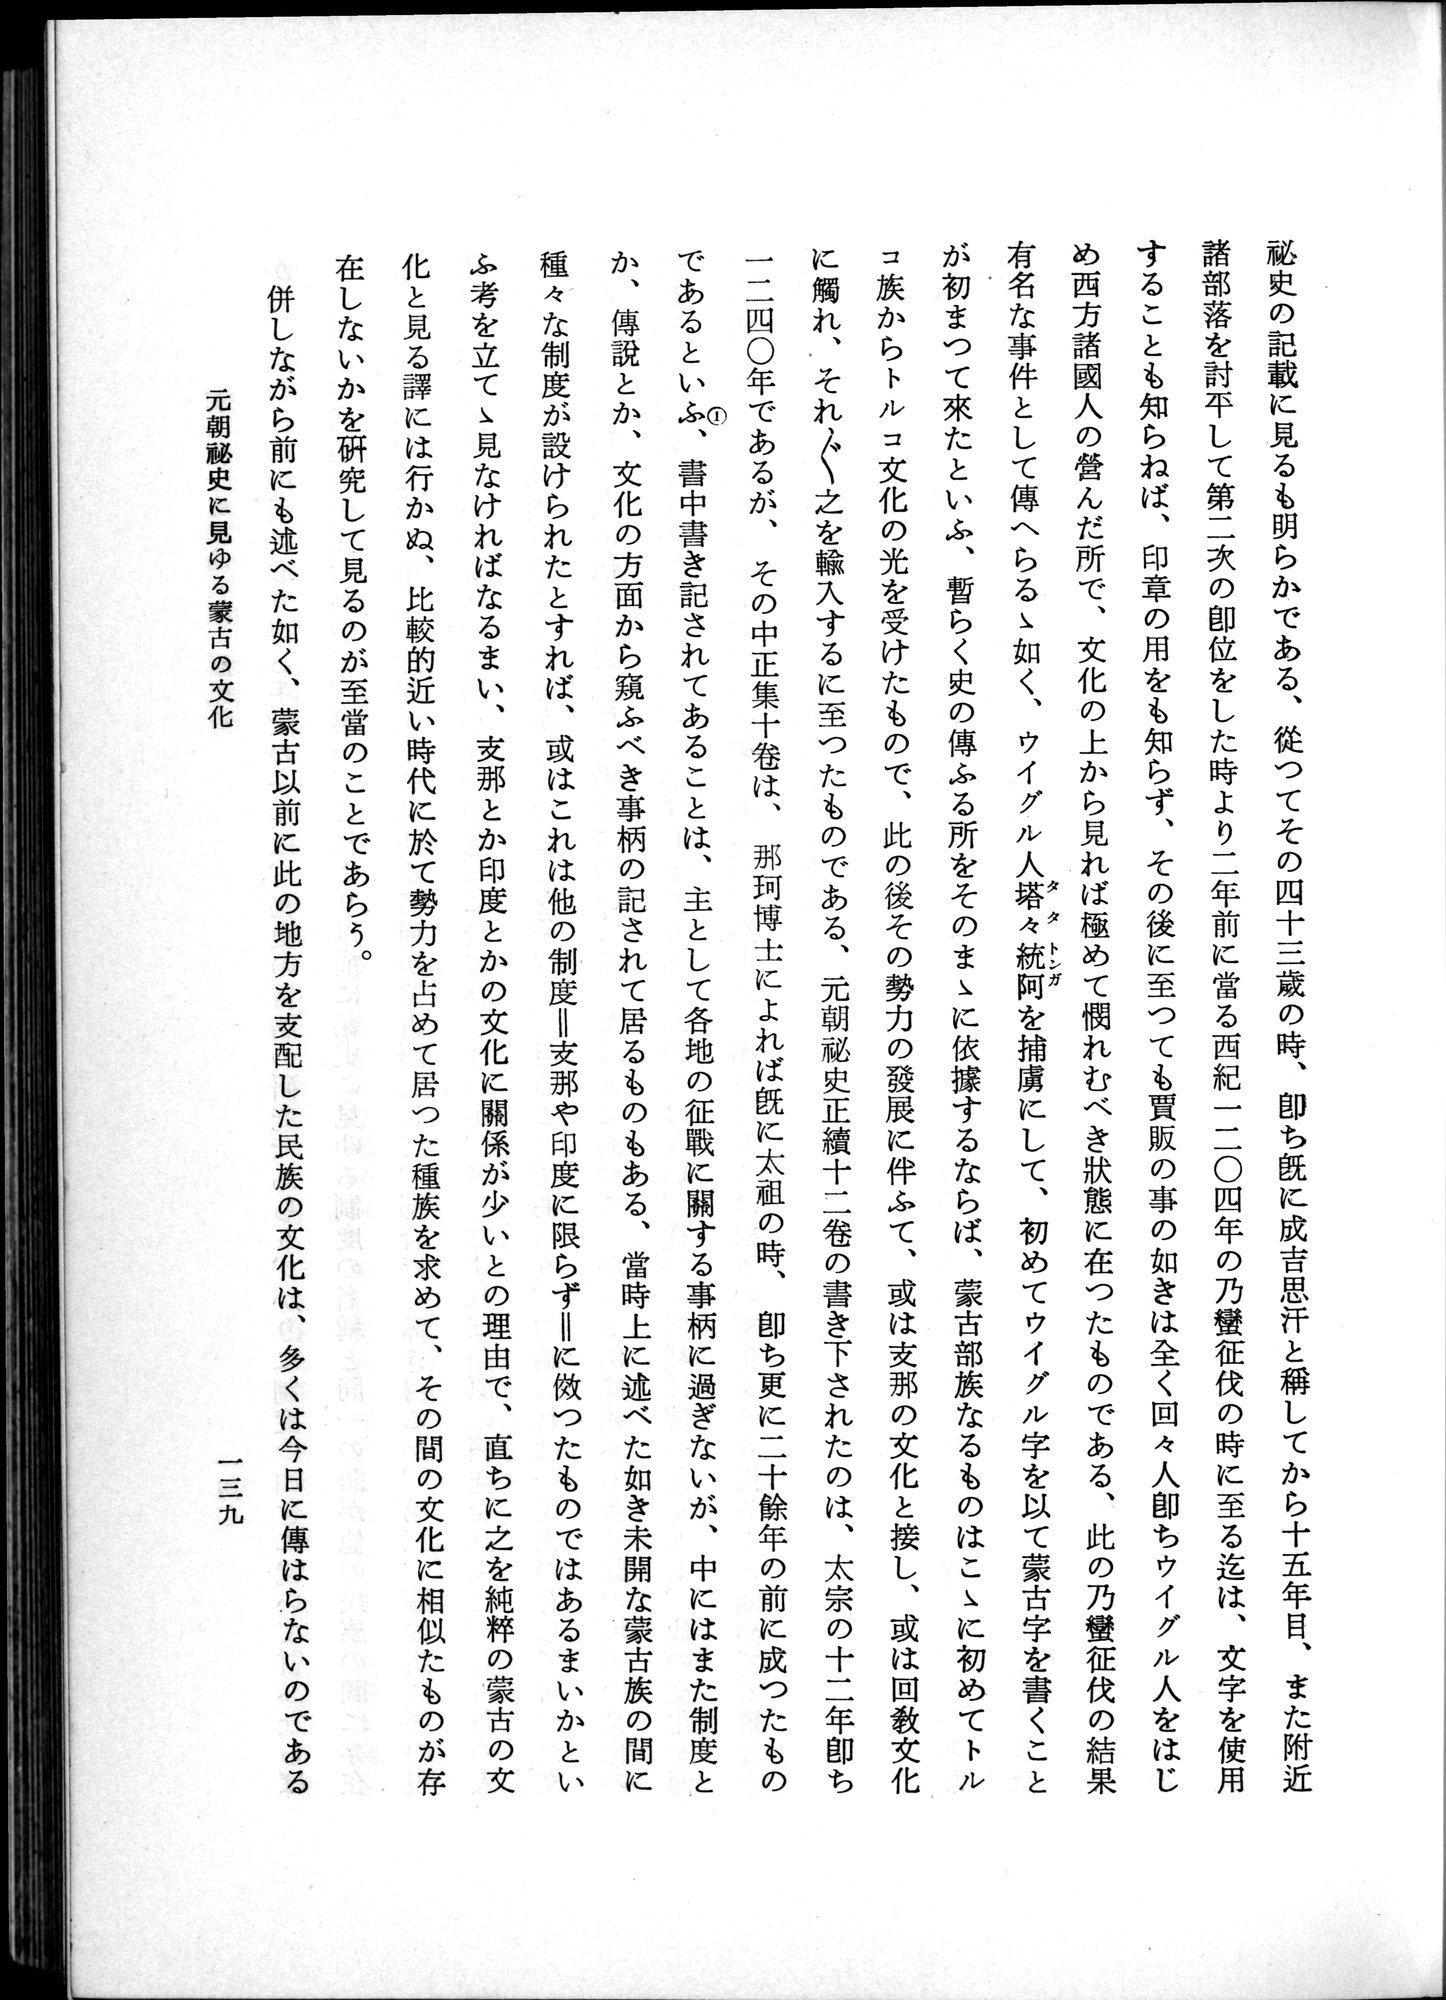 羽田博士史学論文集 : vol.1 / Page 177 (Grayscale High Resolution Image)